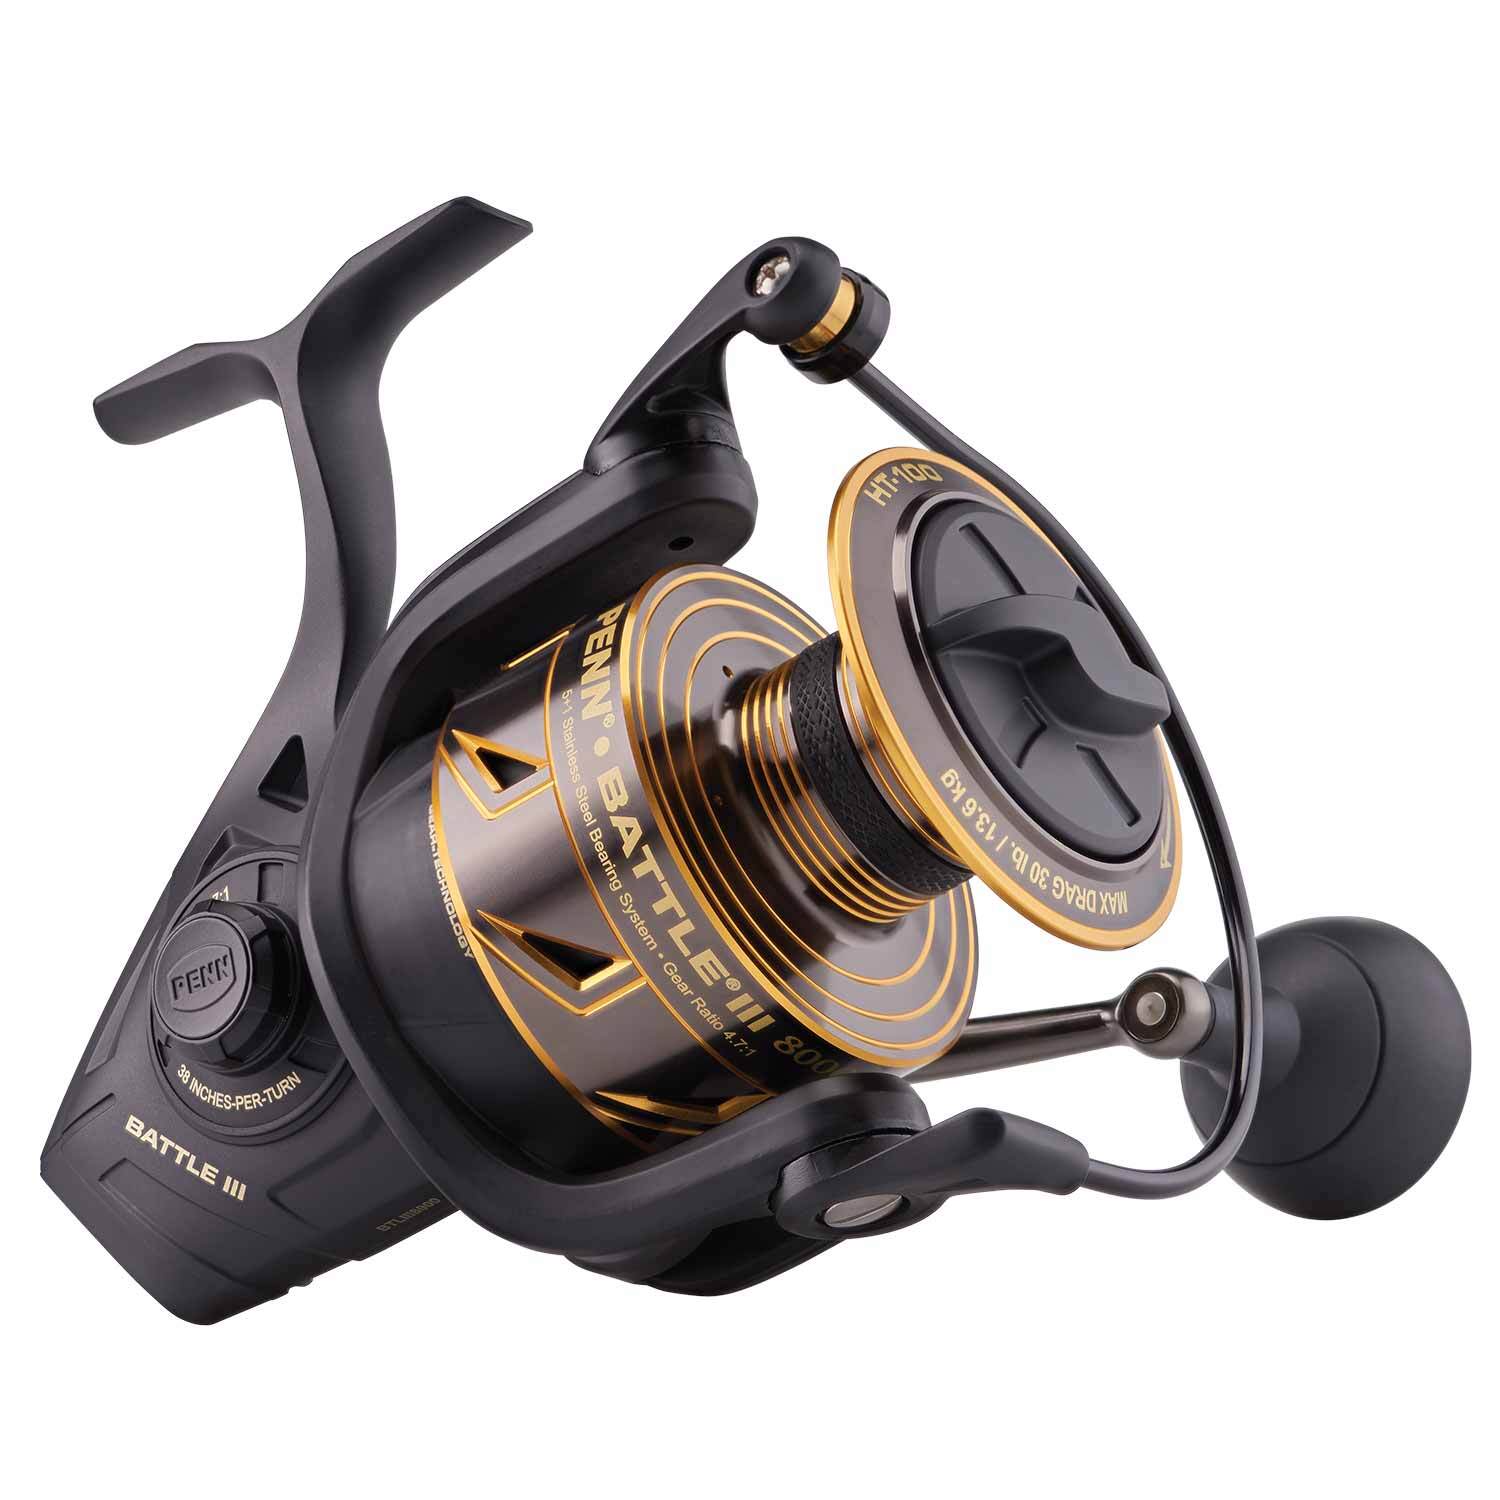 Penn BATTLE II 8000 Spin Fishing Spin Reel + Warranty + Free